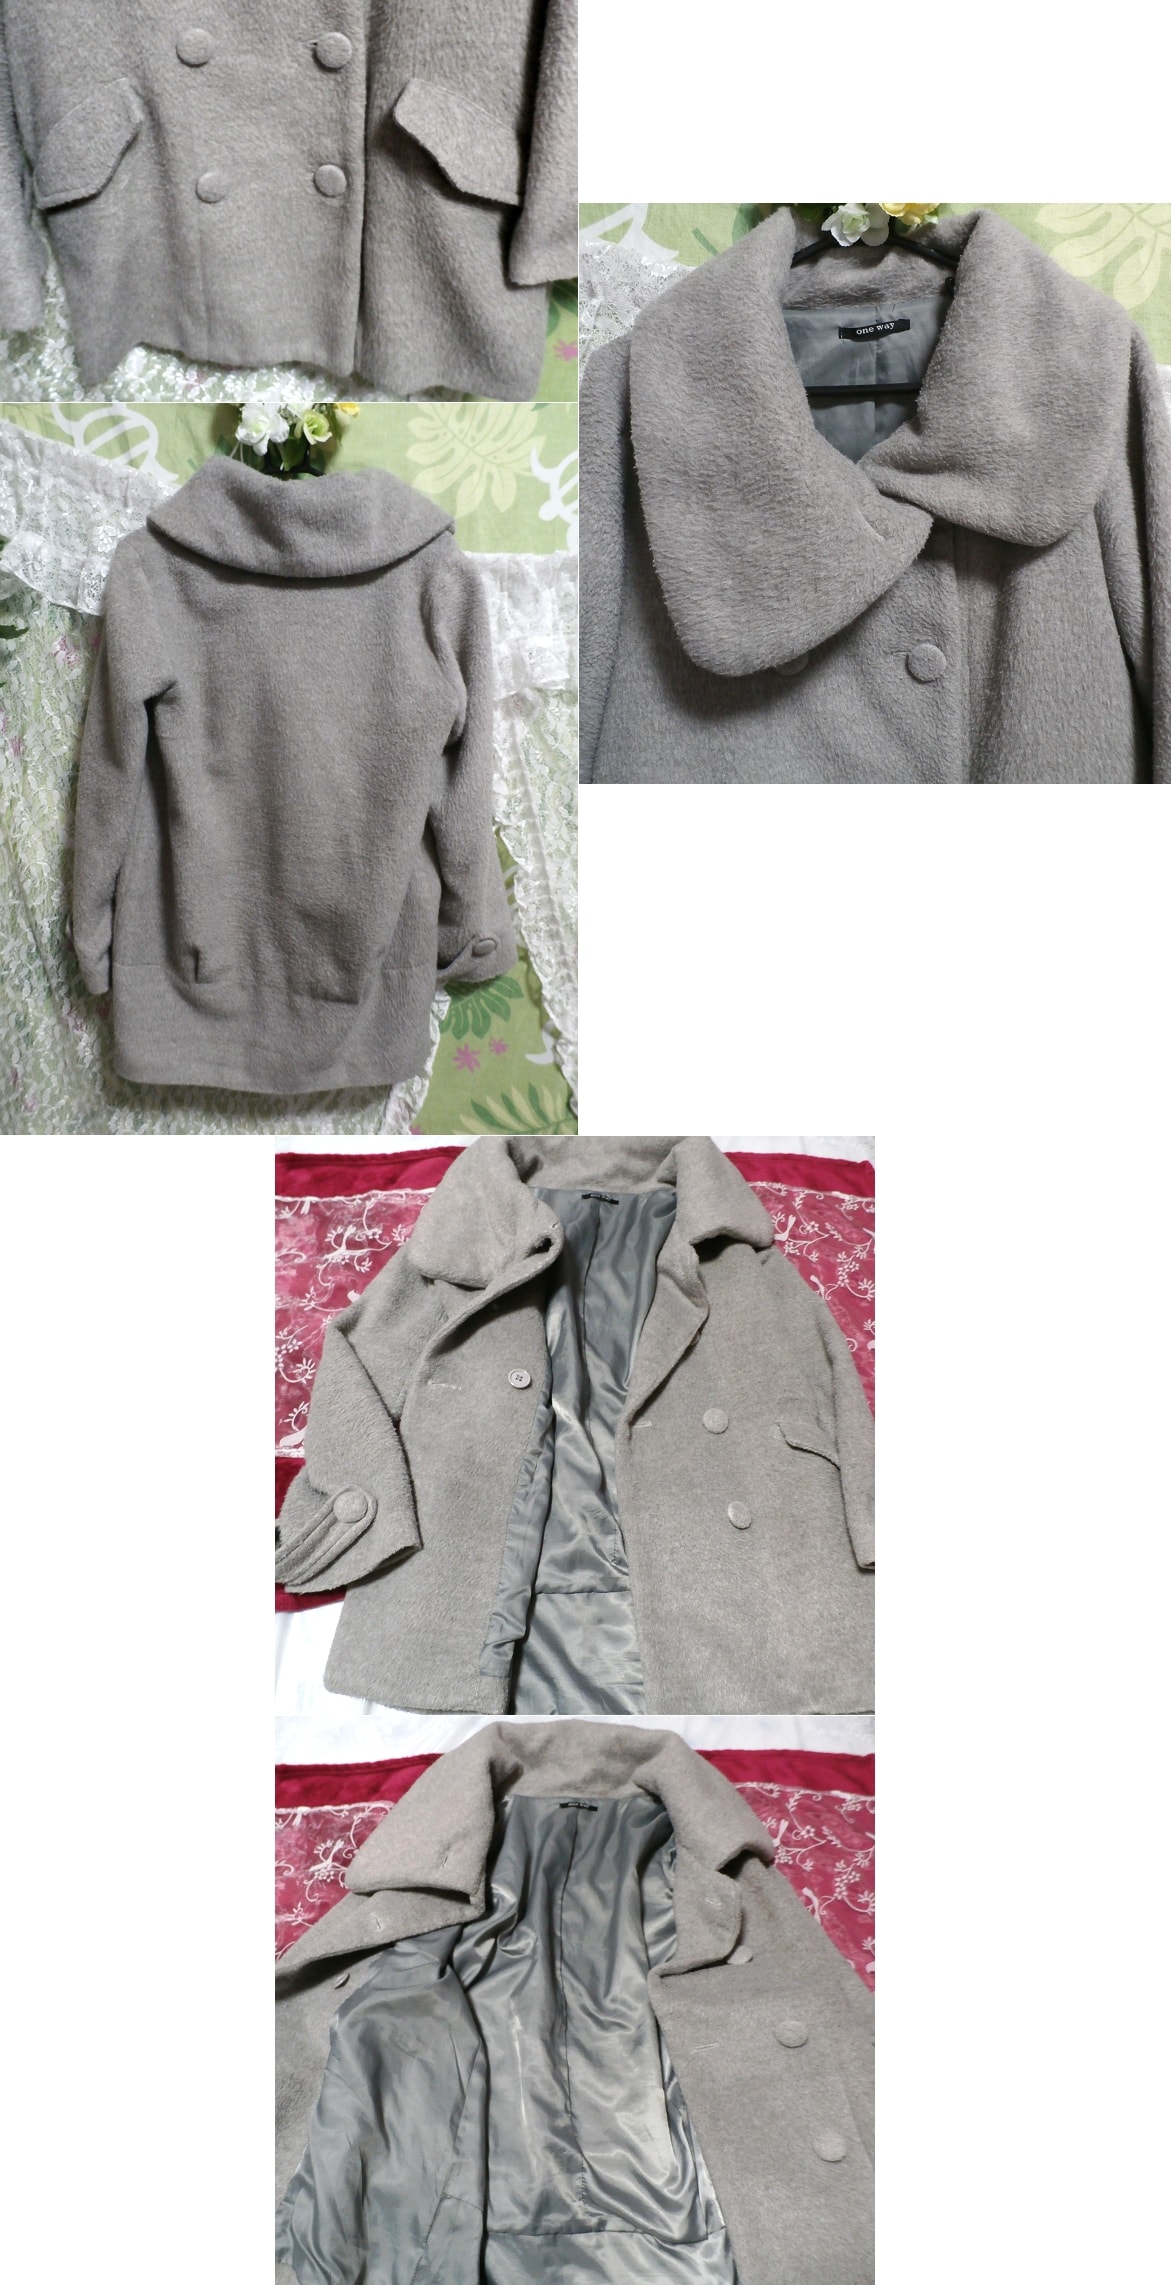 Милый девчачий серый длинный плащ-пальто, пальто, пальто в целом, размер м